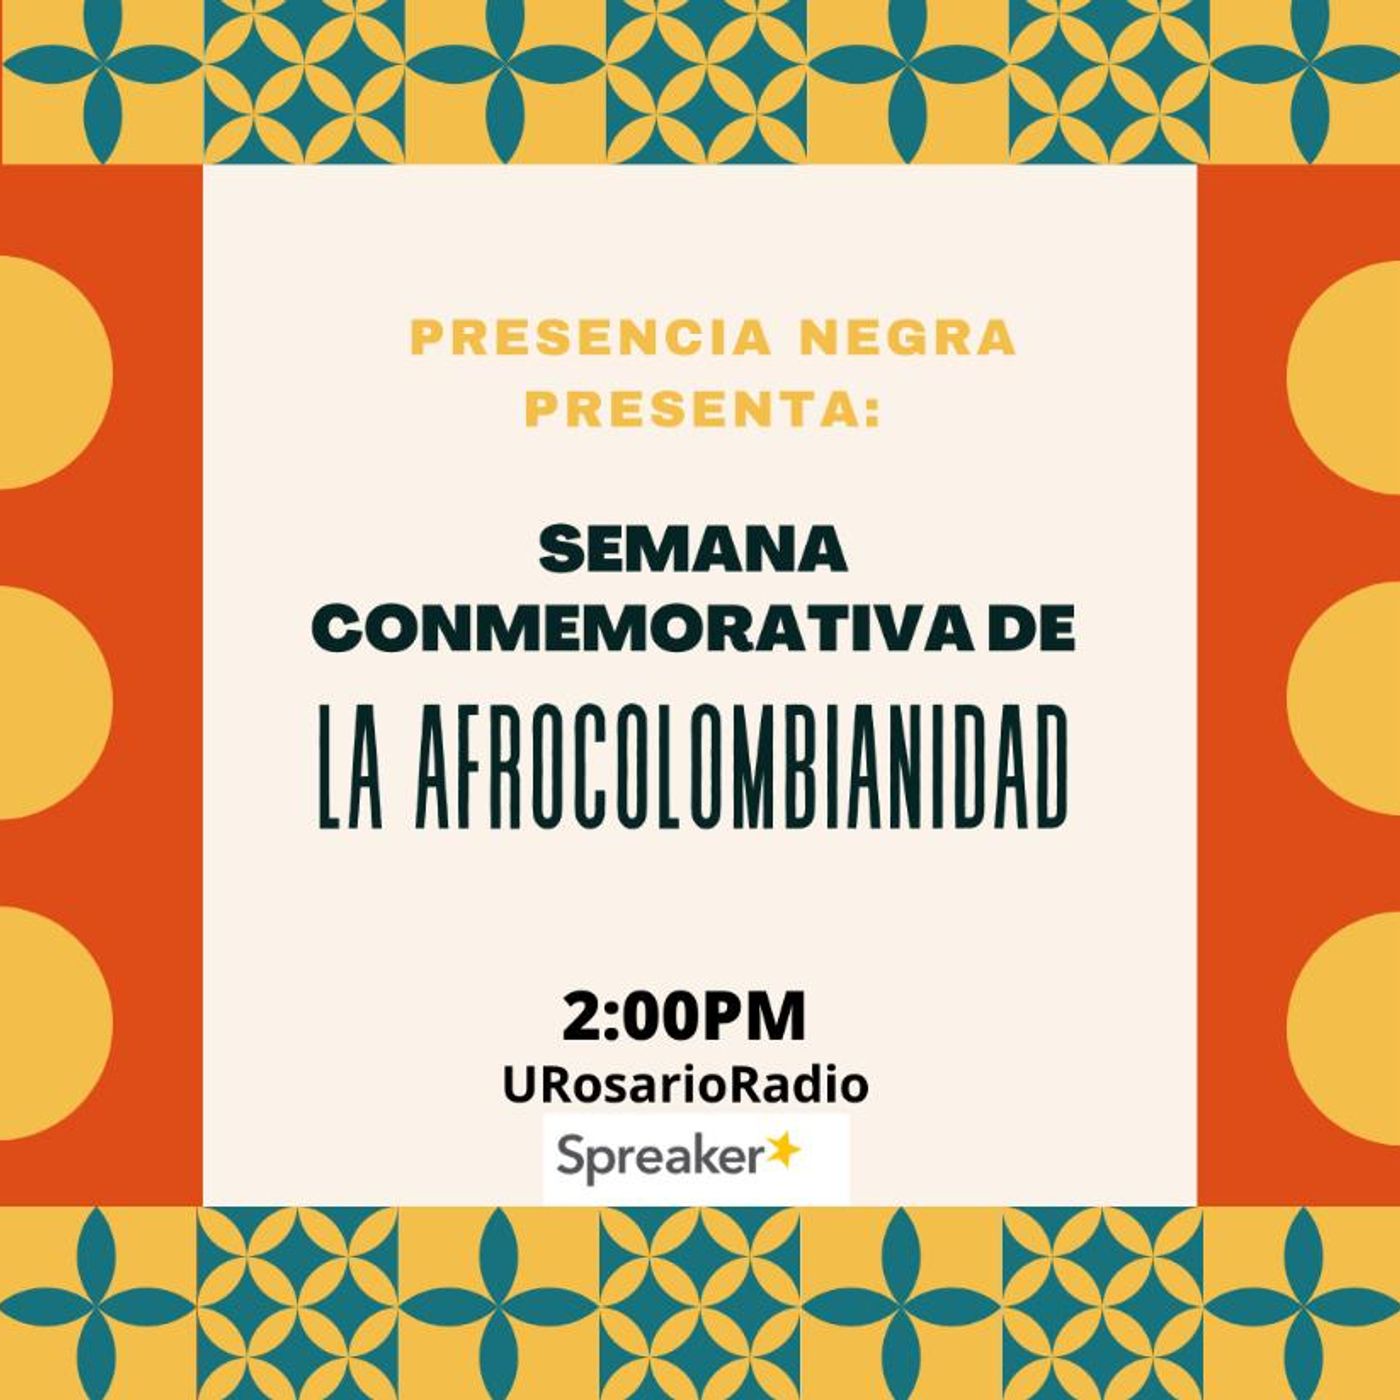 Semana conmemorativa de la afrocolombianidad